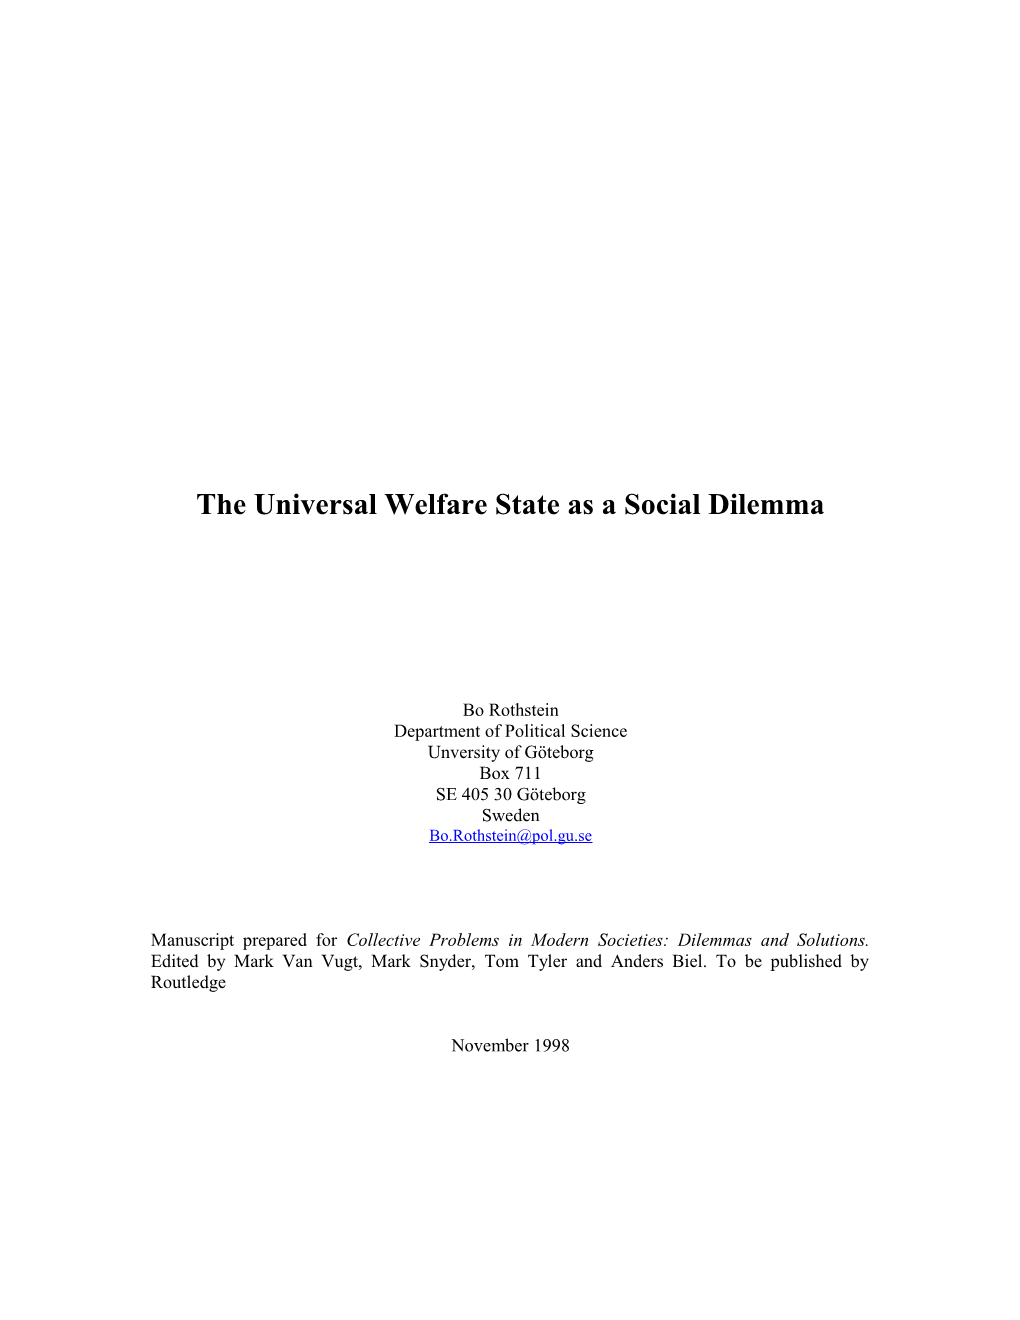 The Welfare State As a Social Dilemma